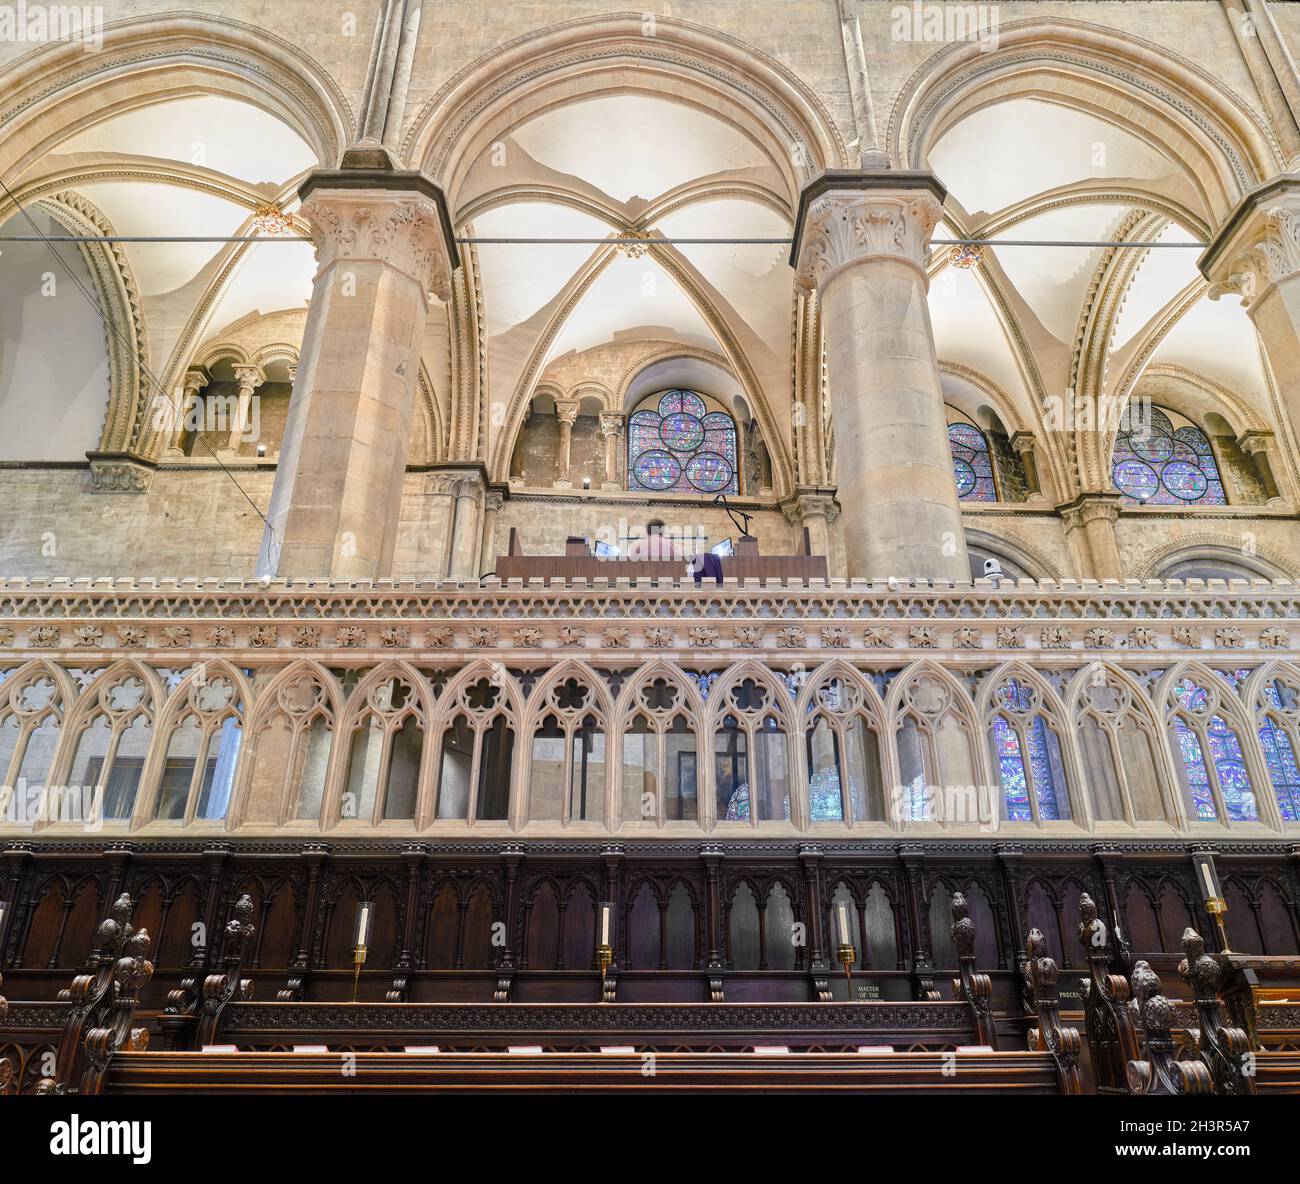 Bancs et loft d'orgue dans le choeur de la cathédrale de Canterbury, Angleterre. Banque D'Images